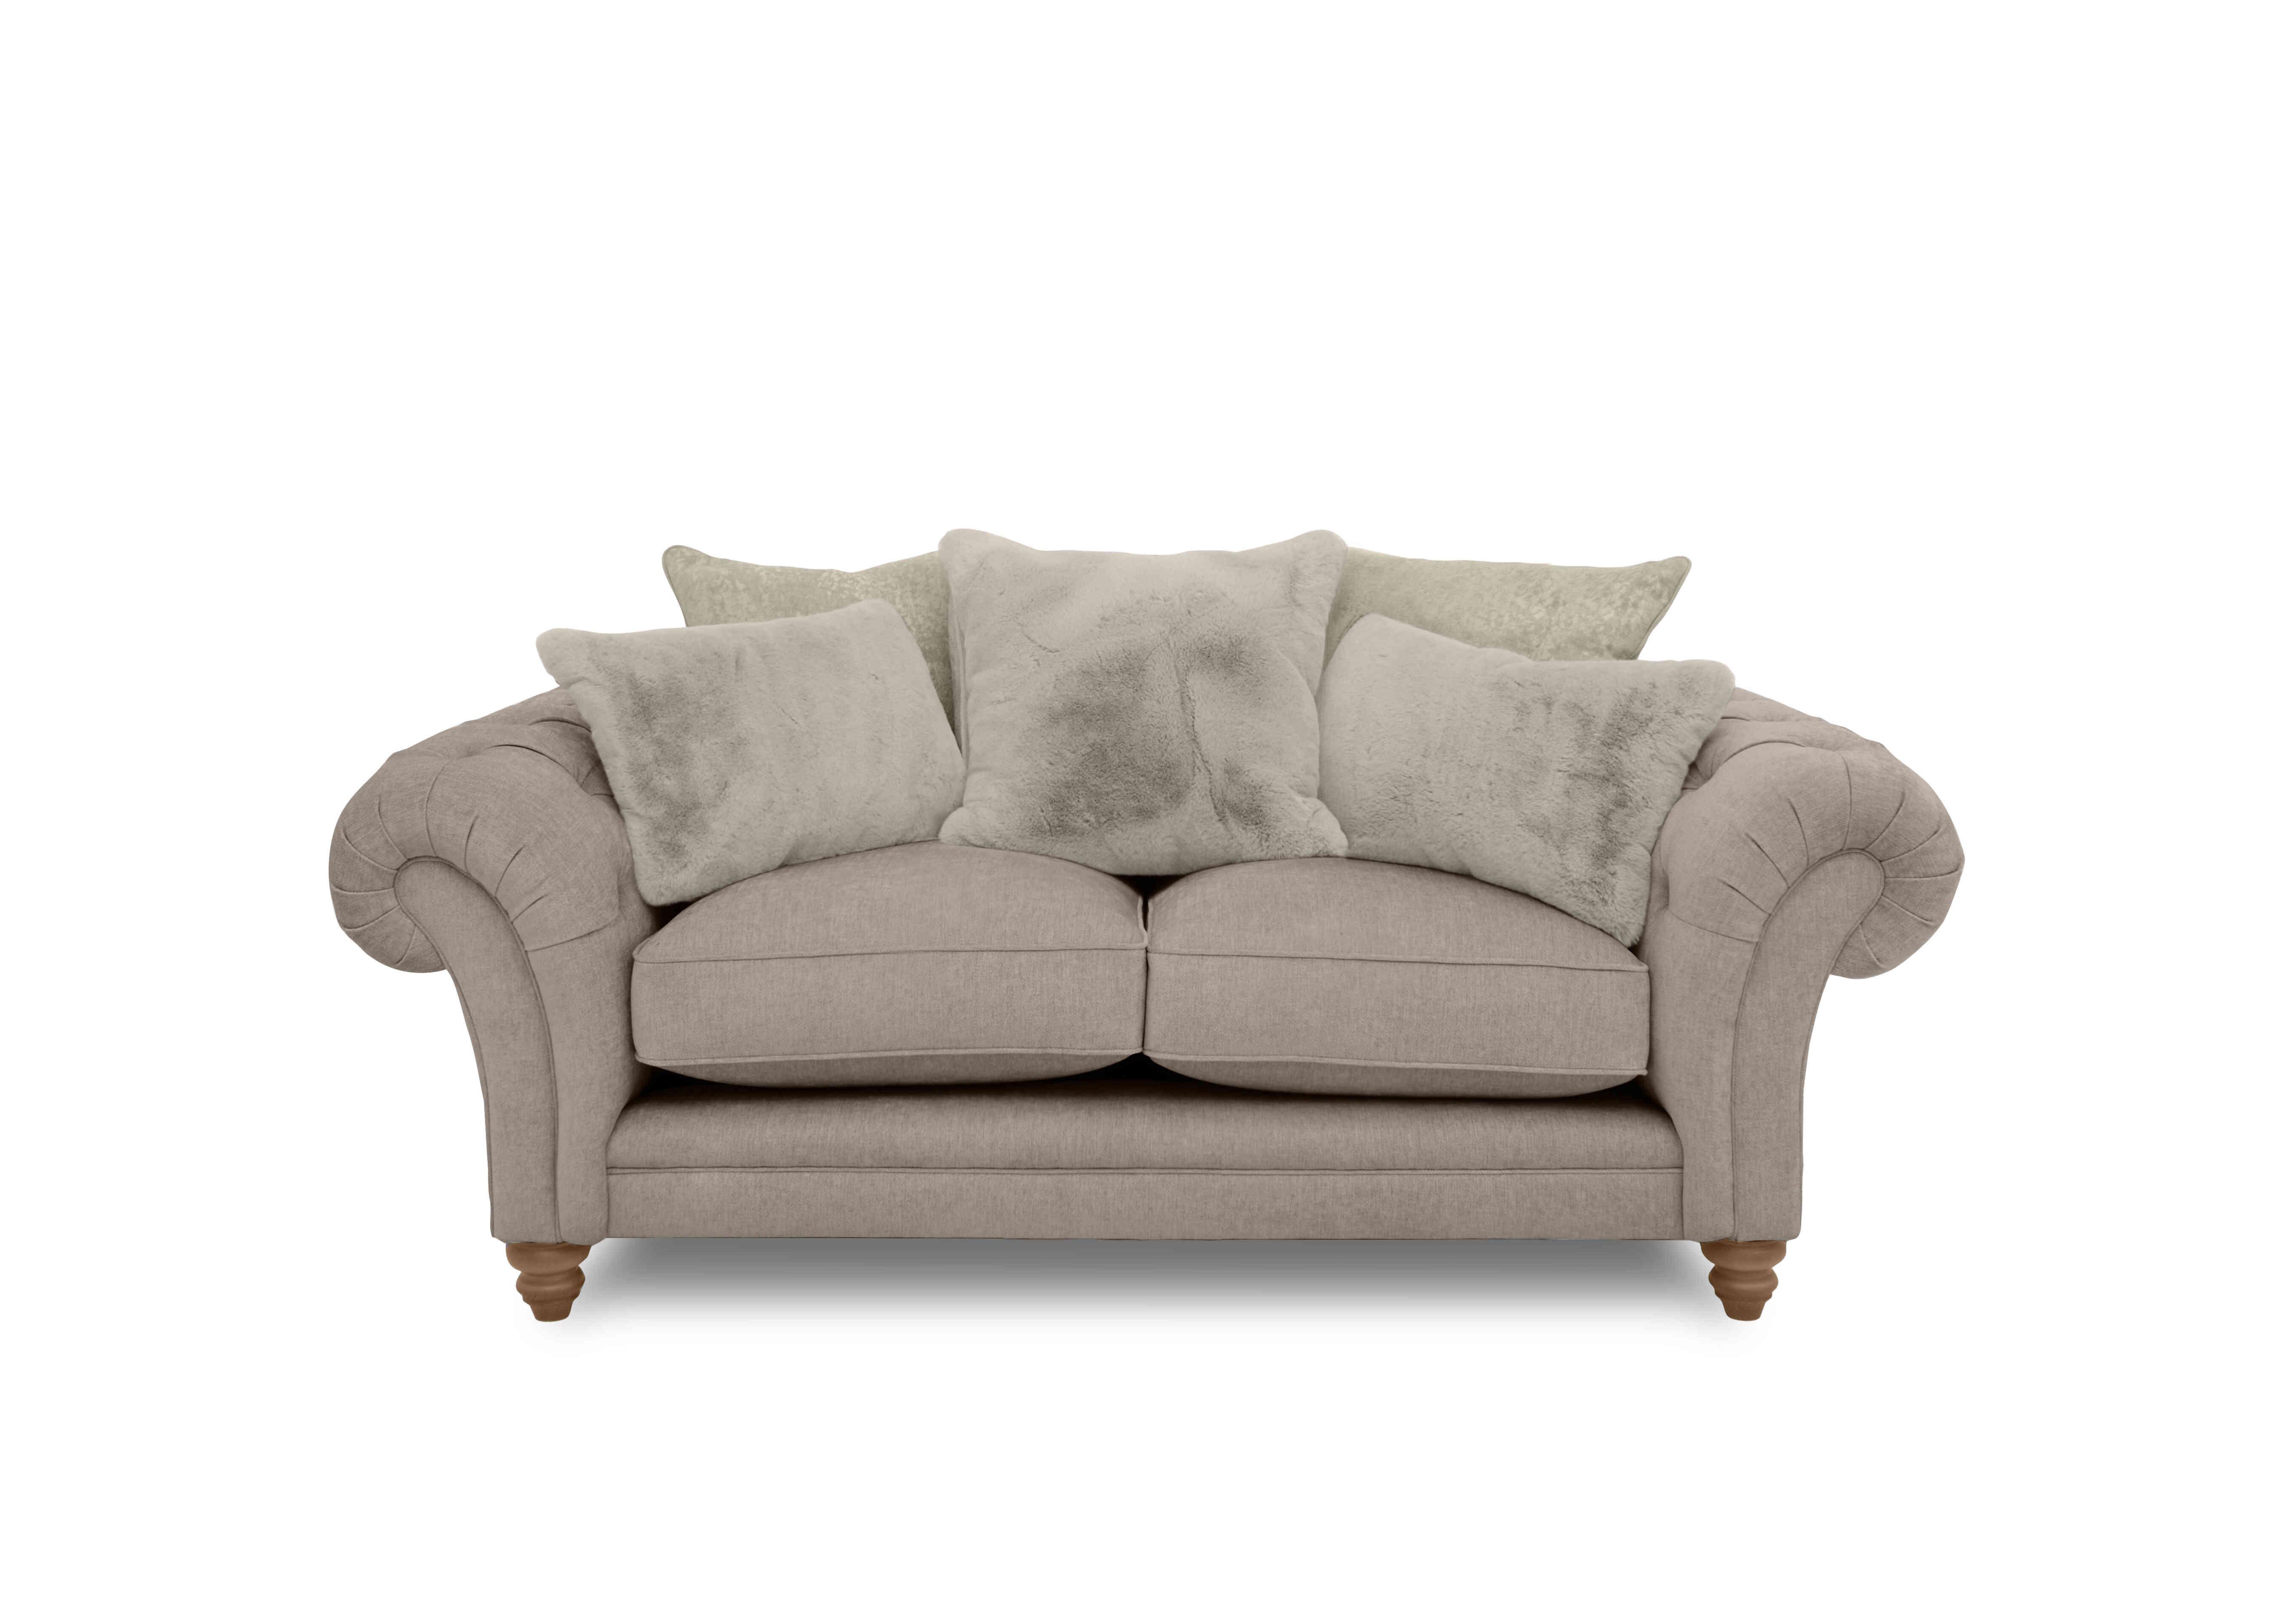 Blenheim 2 Seater Scatter Back Sofa in Darwin Mink Of on Furniture Village